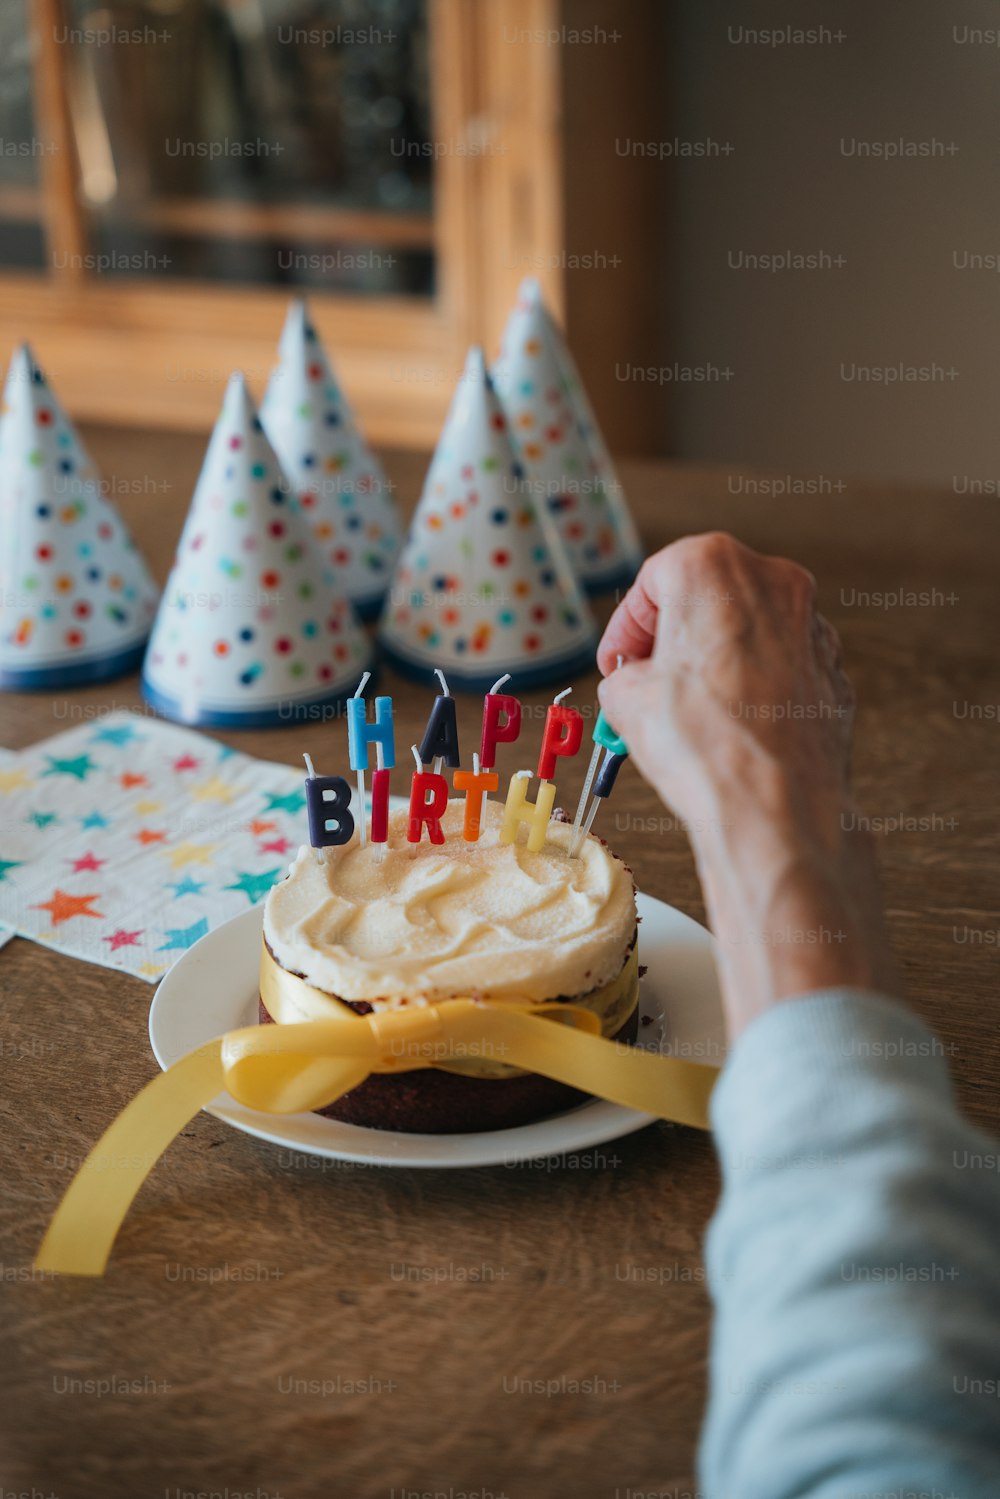 Una persona está sosteniendo un pastel de cumpleaños con velas